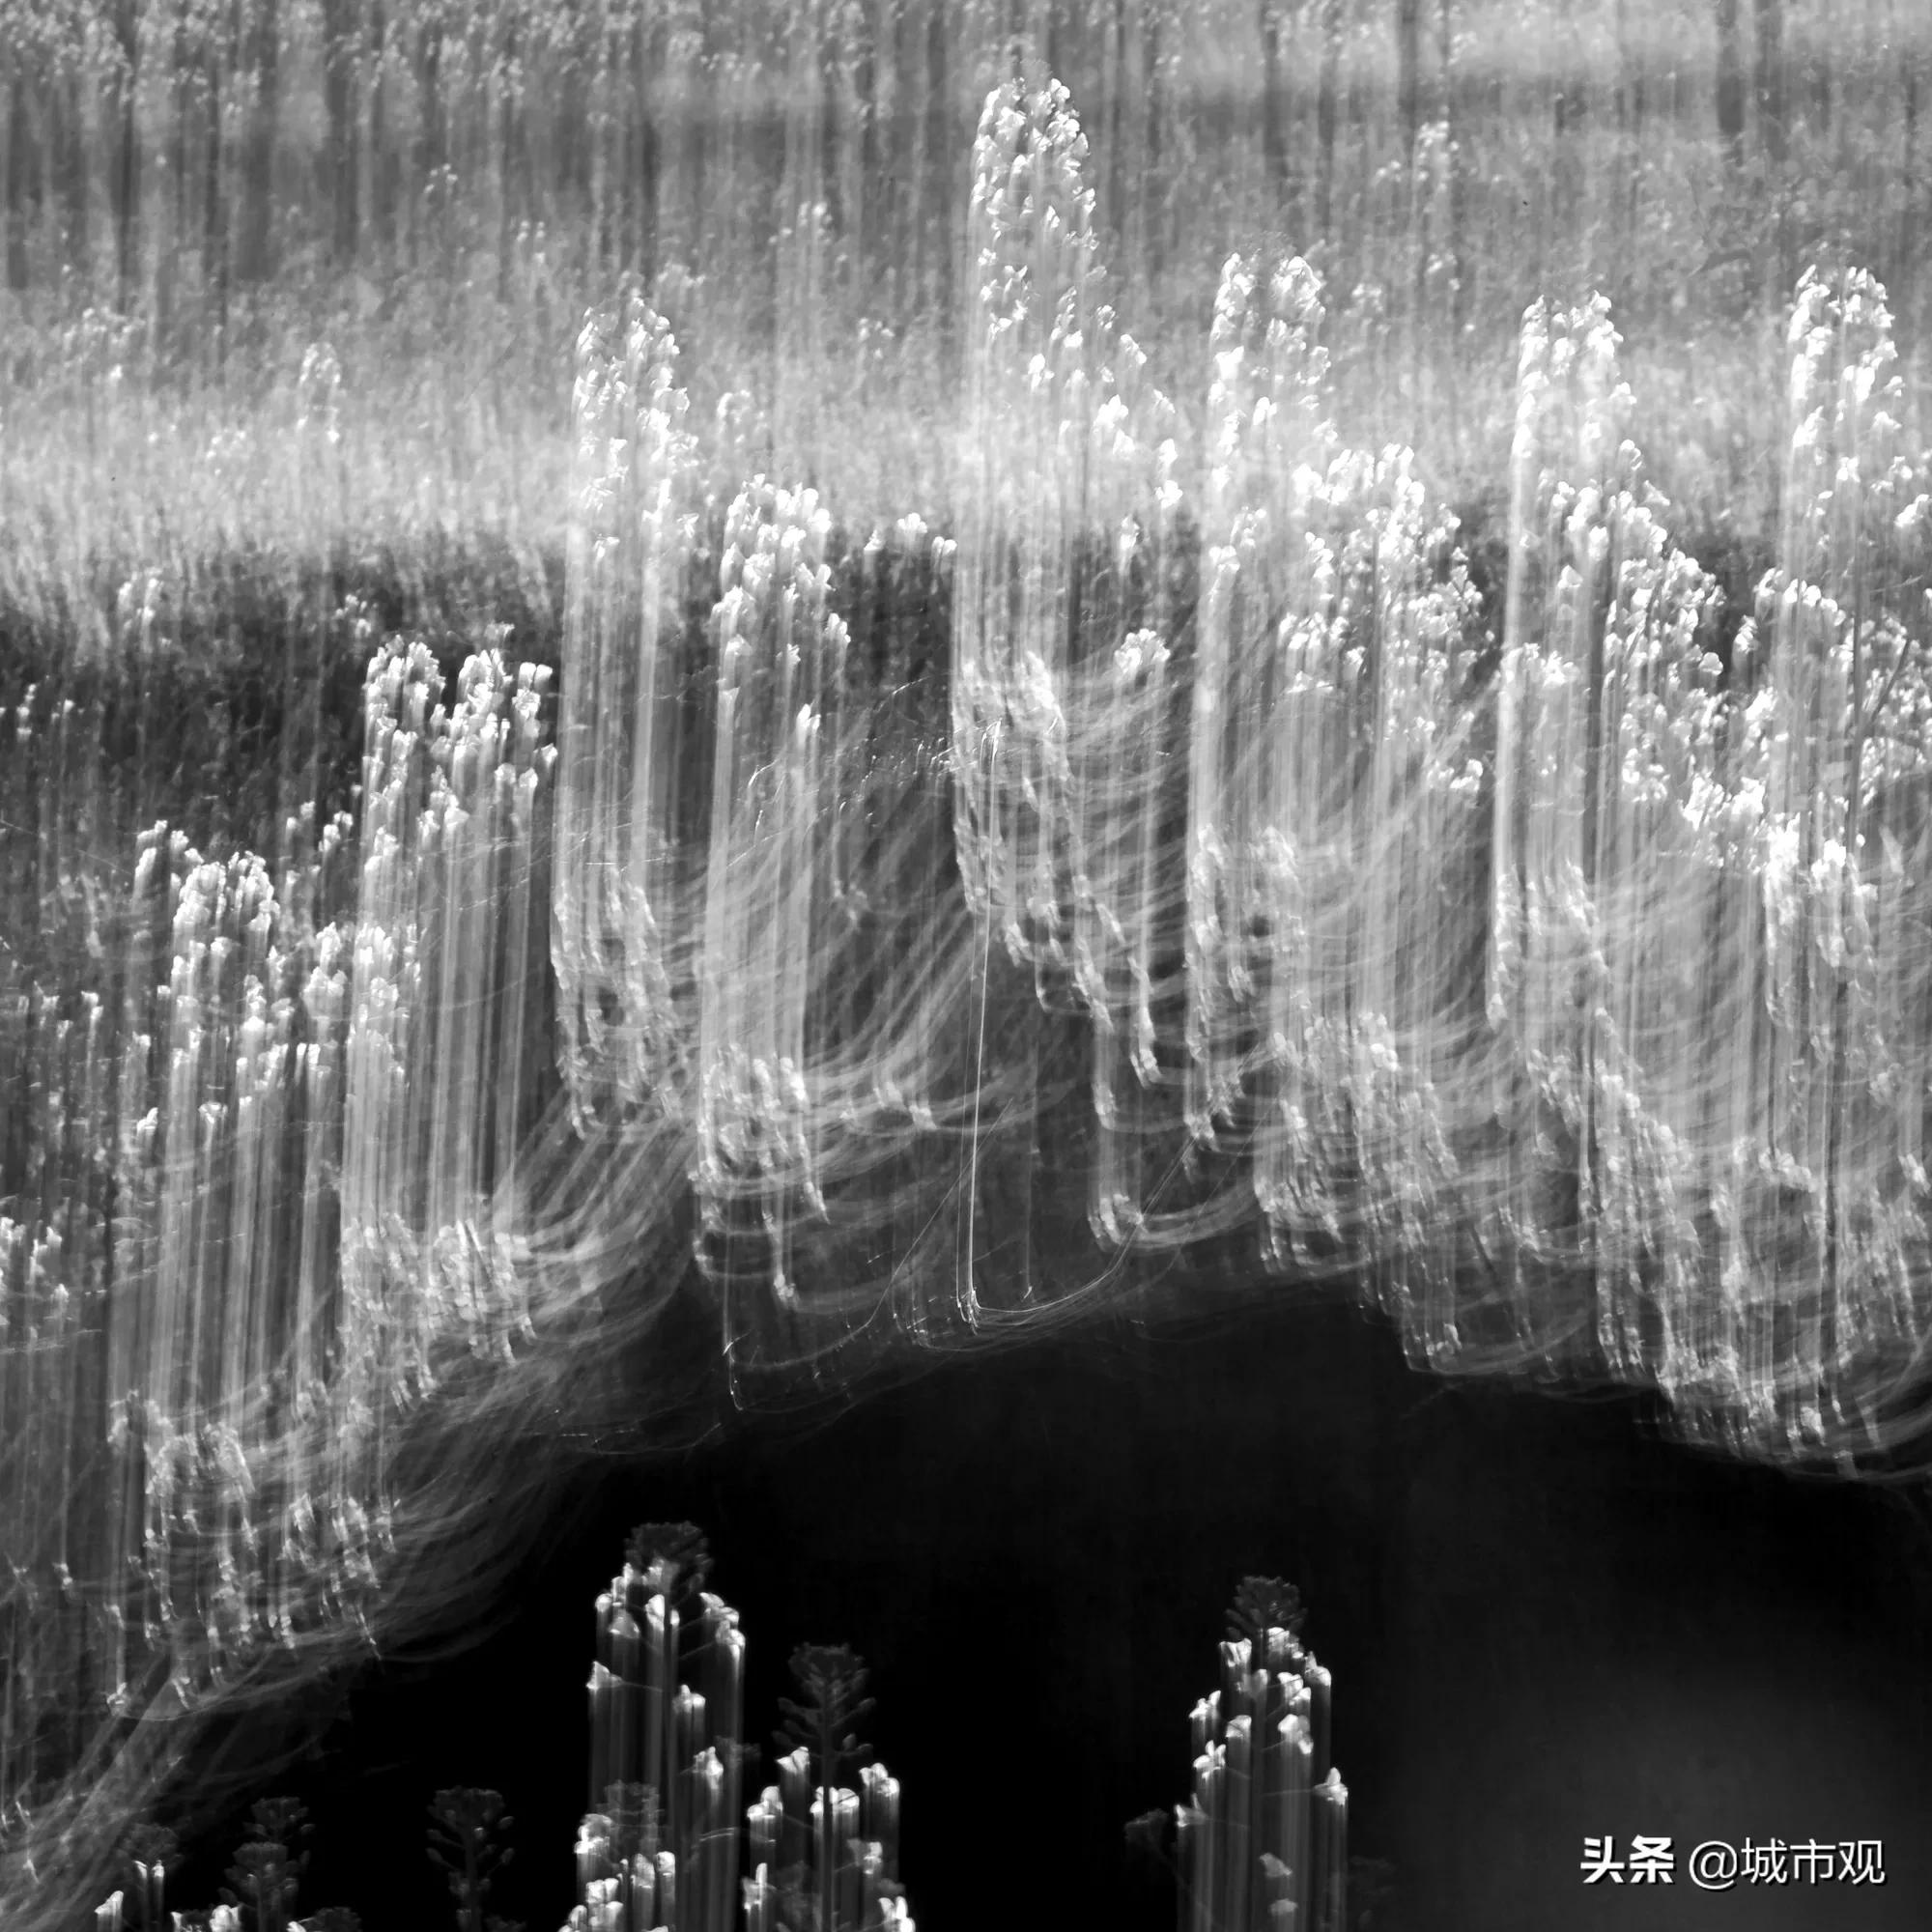 大展黔图《一轮·素念禅心》黄驿伦摄影作品在贵州师大美术馆展出